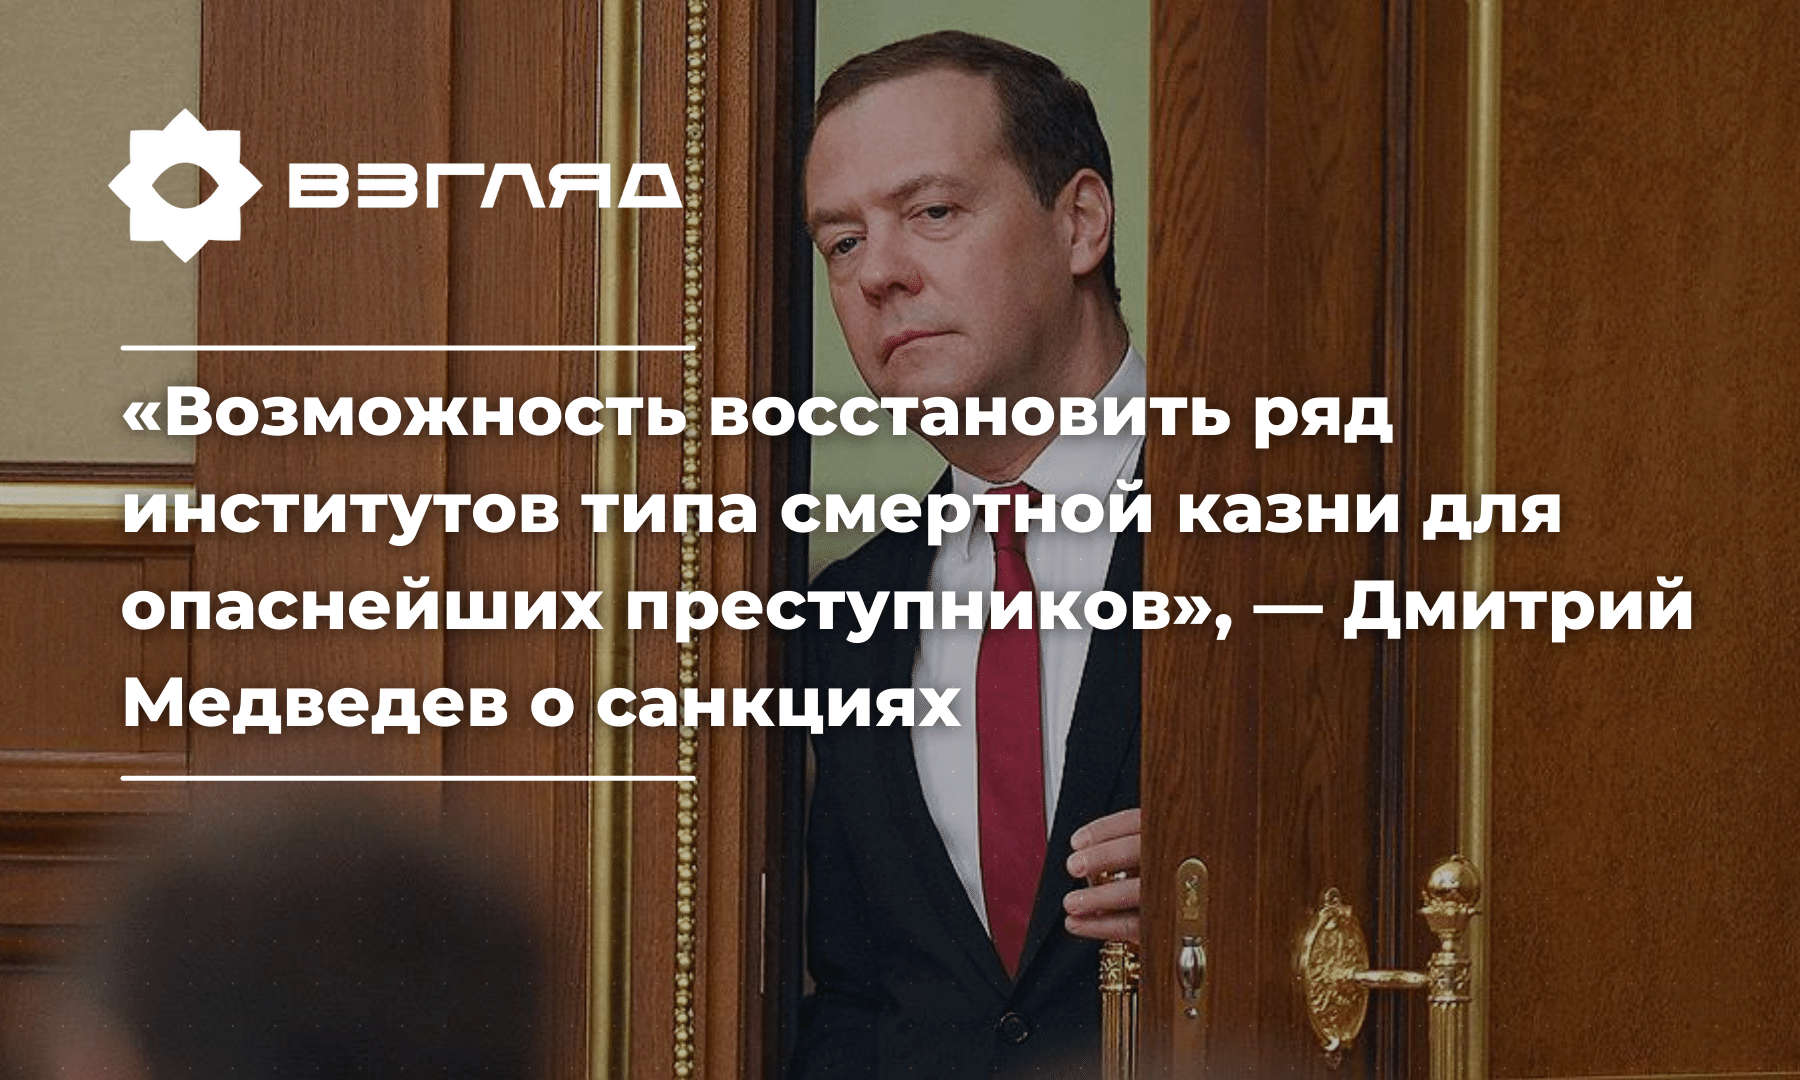 «Санкции – миф, фикция, фигура речи»: Дмитрий Медведев о введении ограничений против России